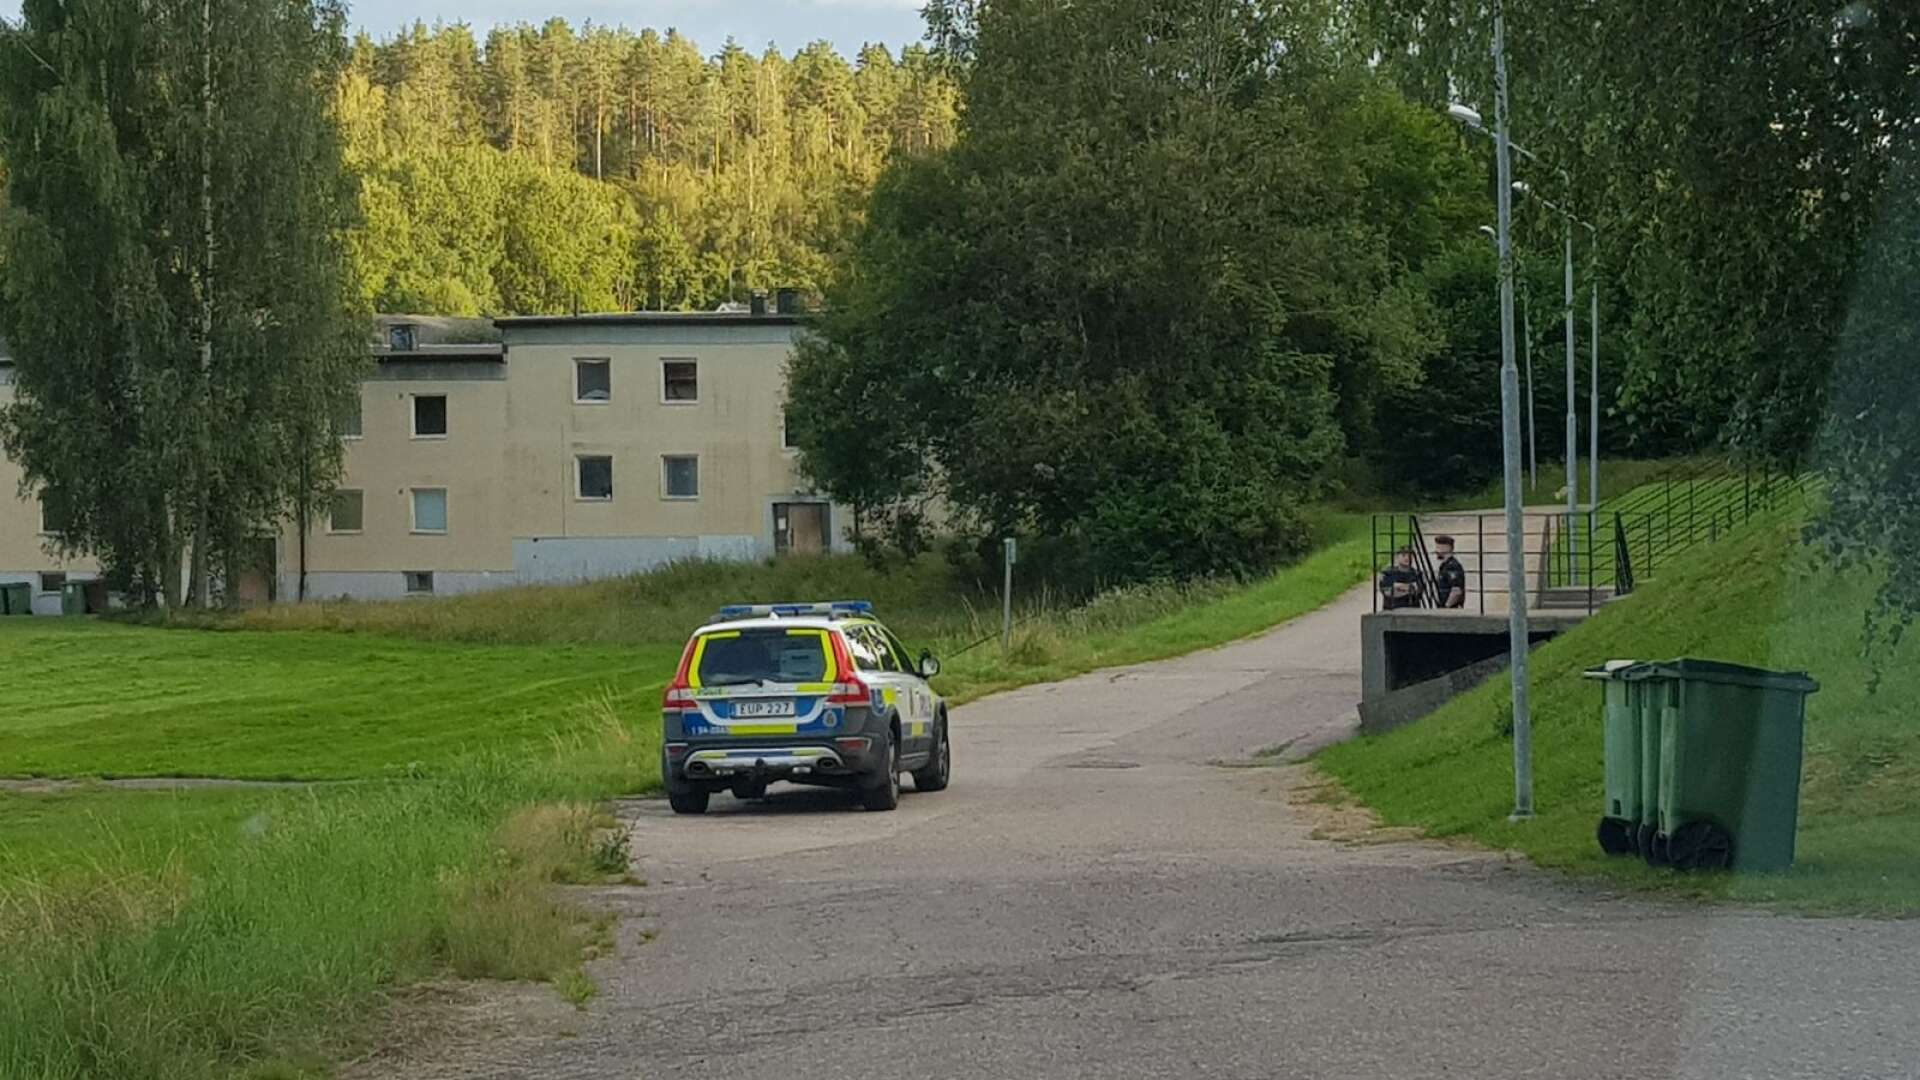 En kvinna i 40-årsåldern har gripits och anhållits misstänkt för att ha utfört knivattacken i Bengtsfors i lördags. Polisen bevakade en plats på Kunghällsvägen under lördagskvällen.